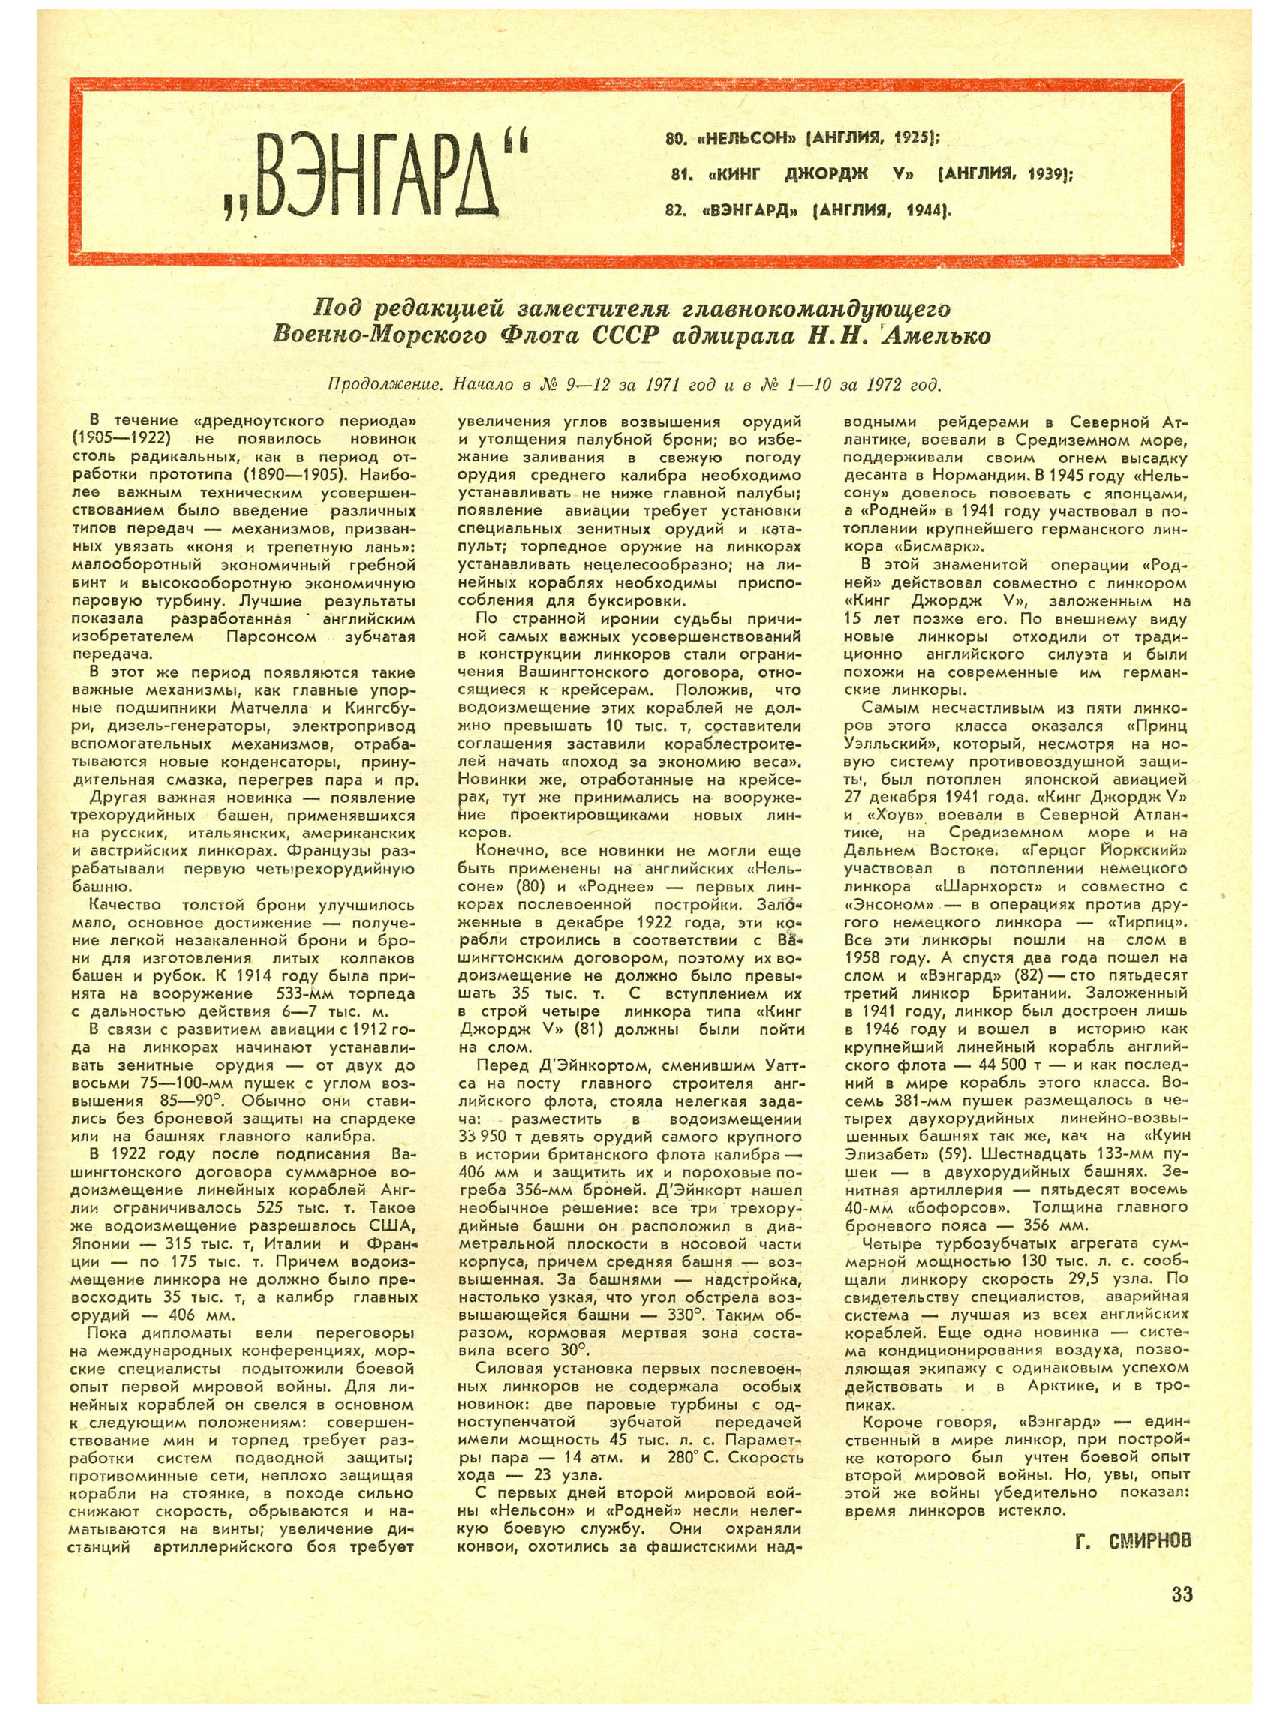 МК 11, 1972, 33 c.